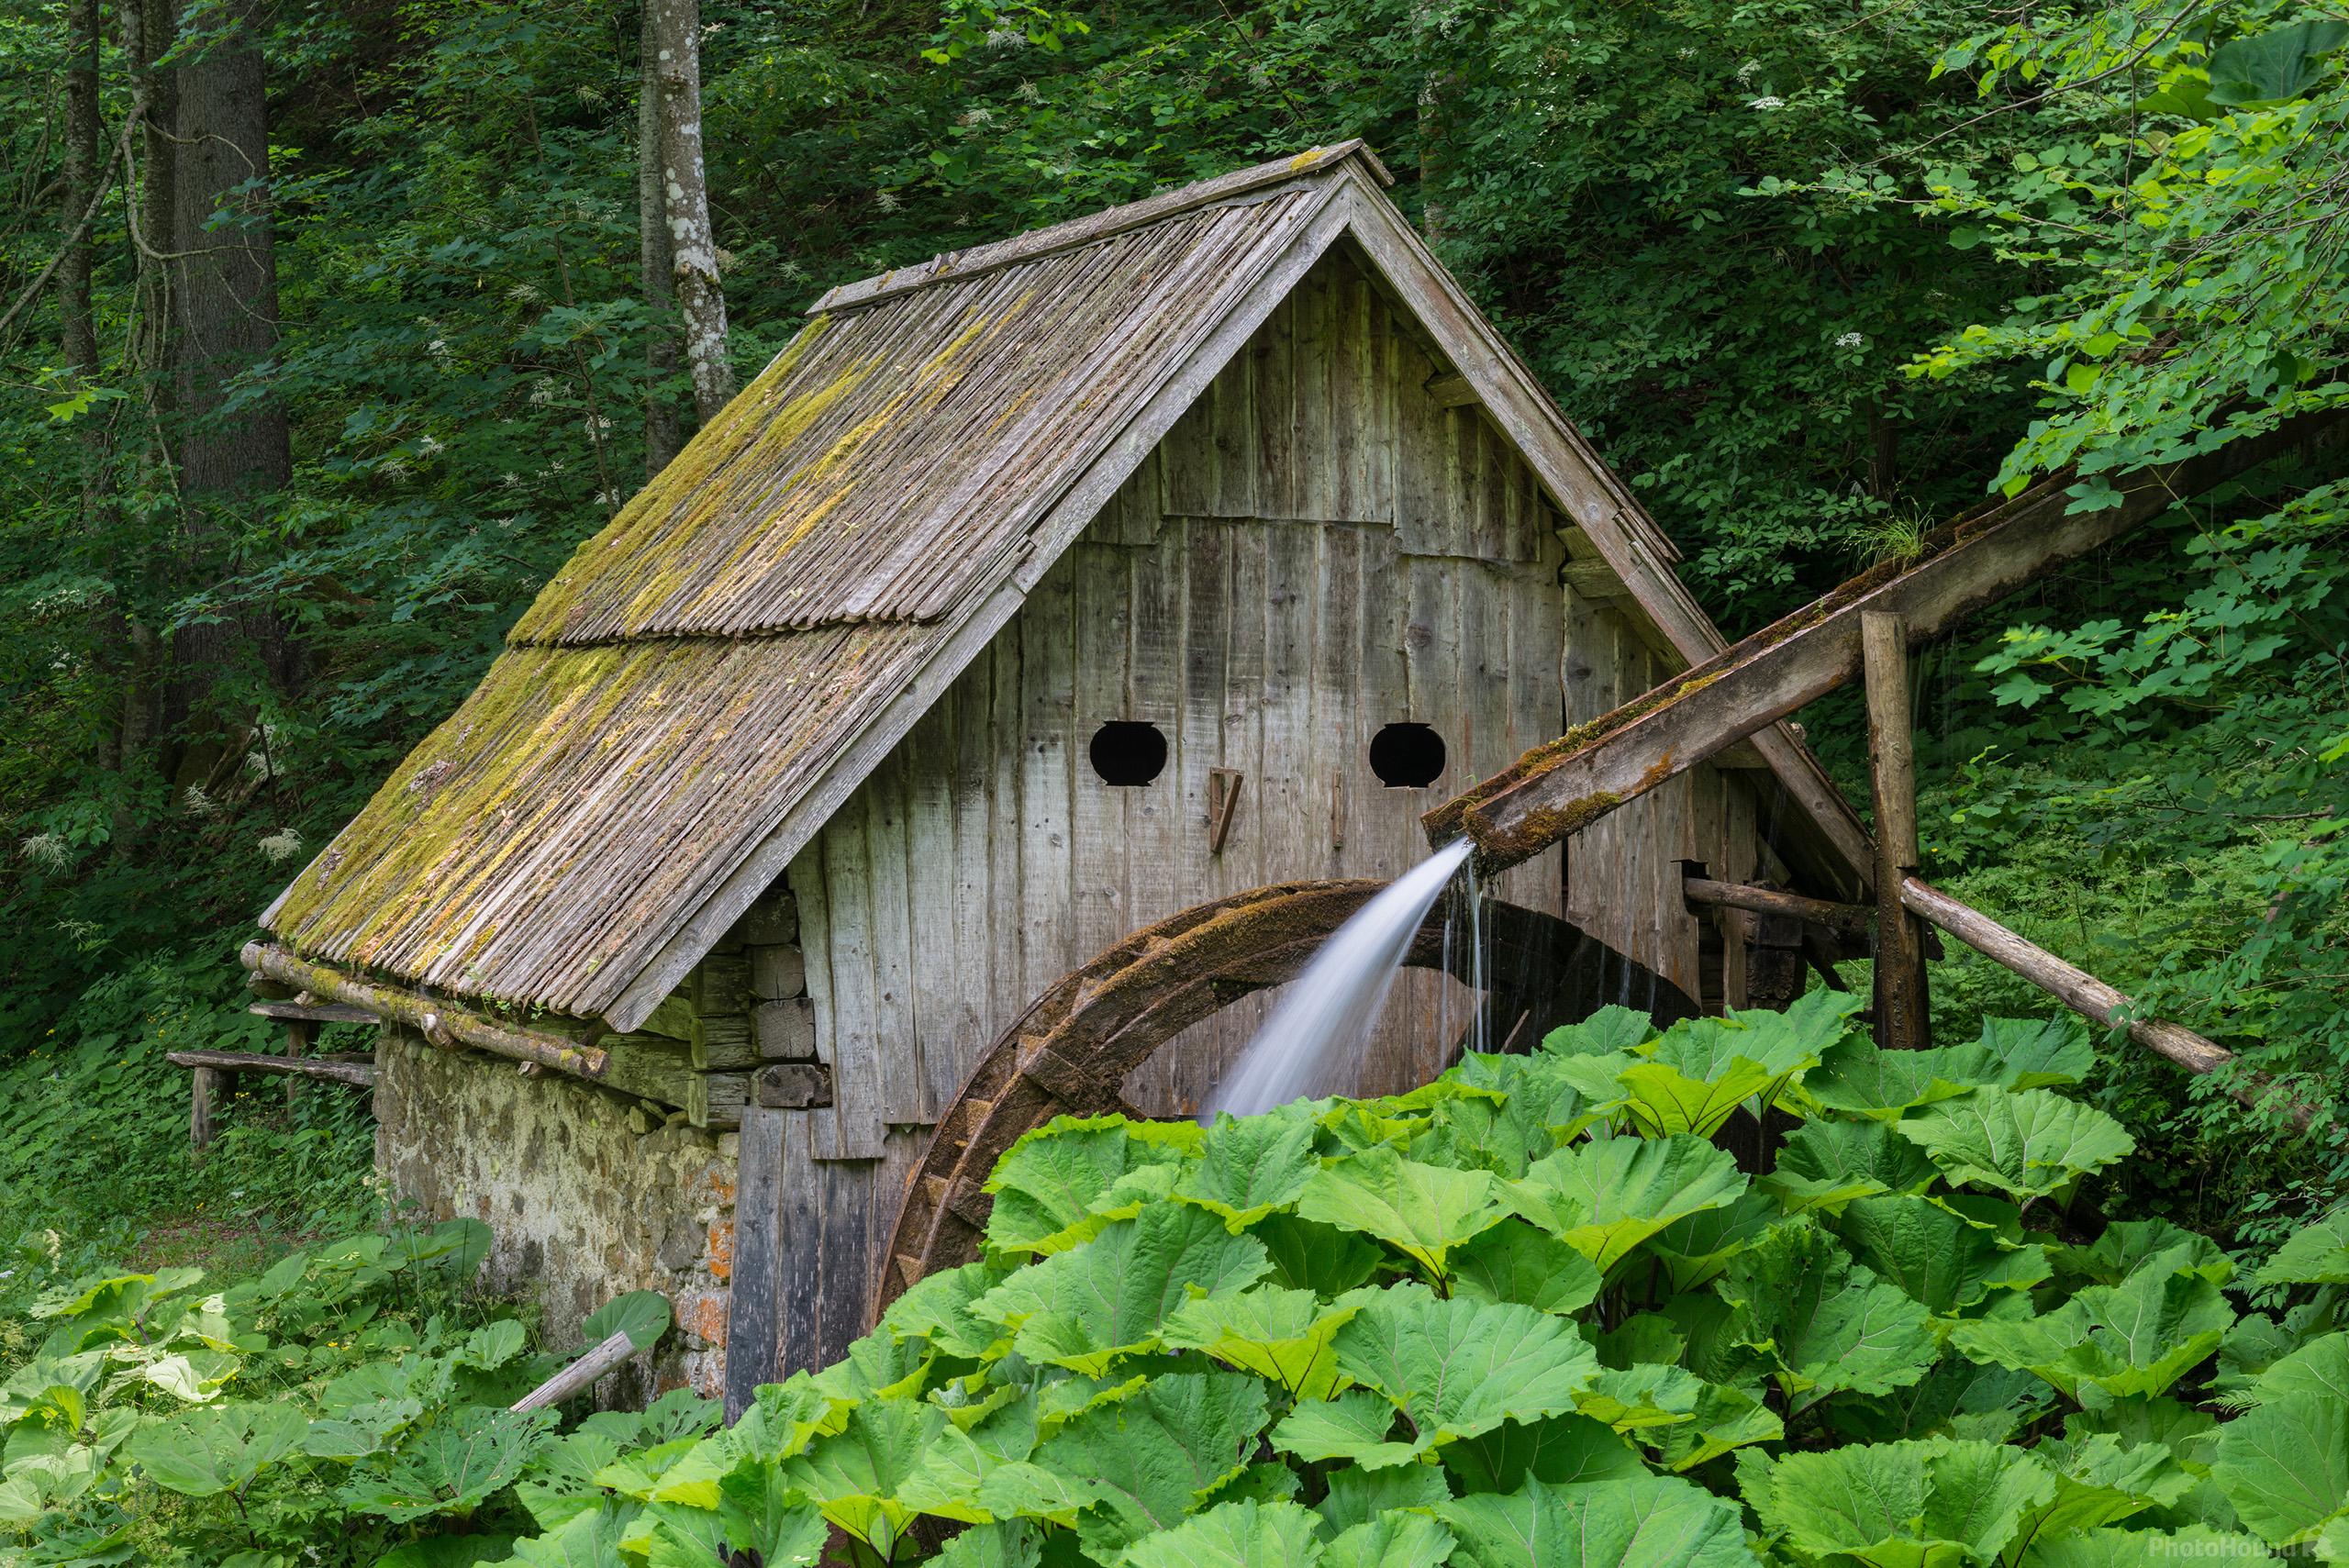 Image of Žagerski Mlin (Saw Mill) by Luka Esenko